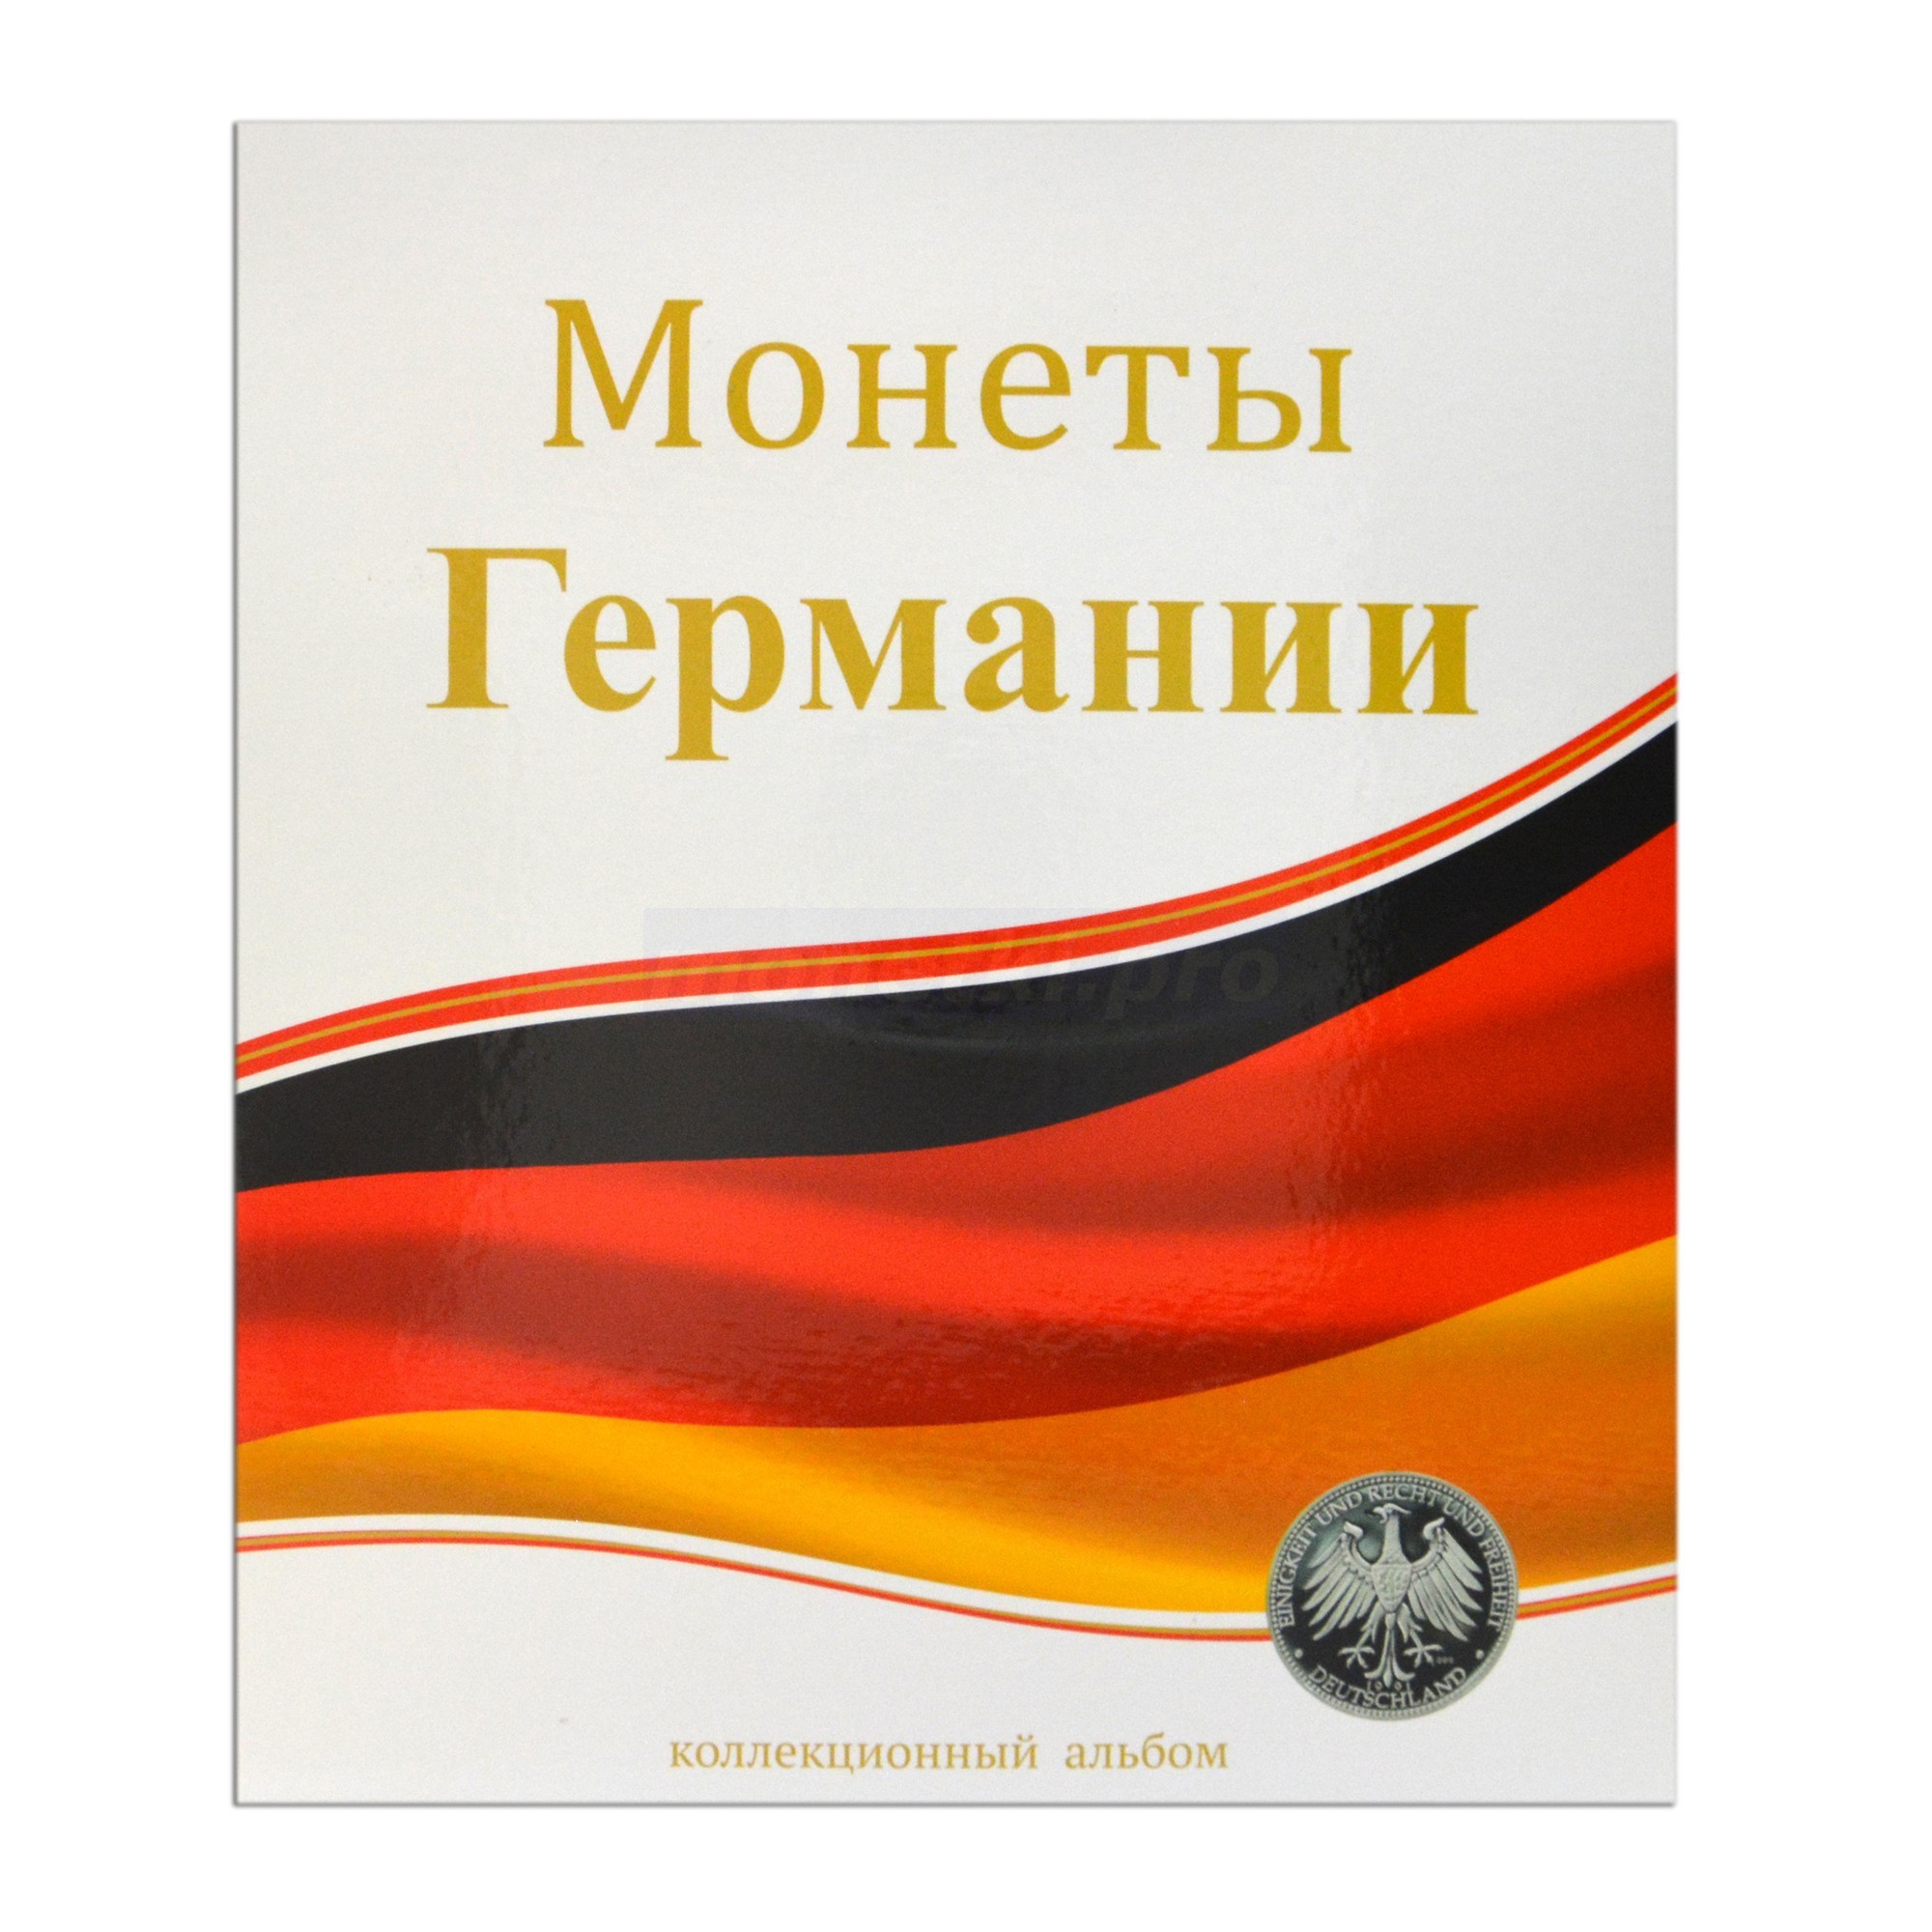 Альбом (папка) для монет "Монеты Германии", формат Оптима (Optima), Толщина корешка: 50 мм, Папки для: Монет Германии, Материал: Ламинированный картон, фото 